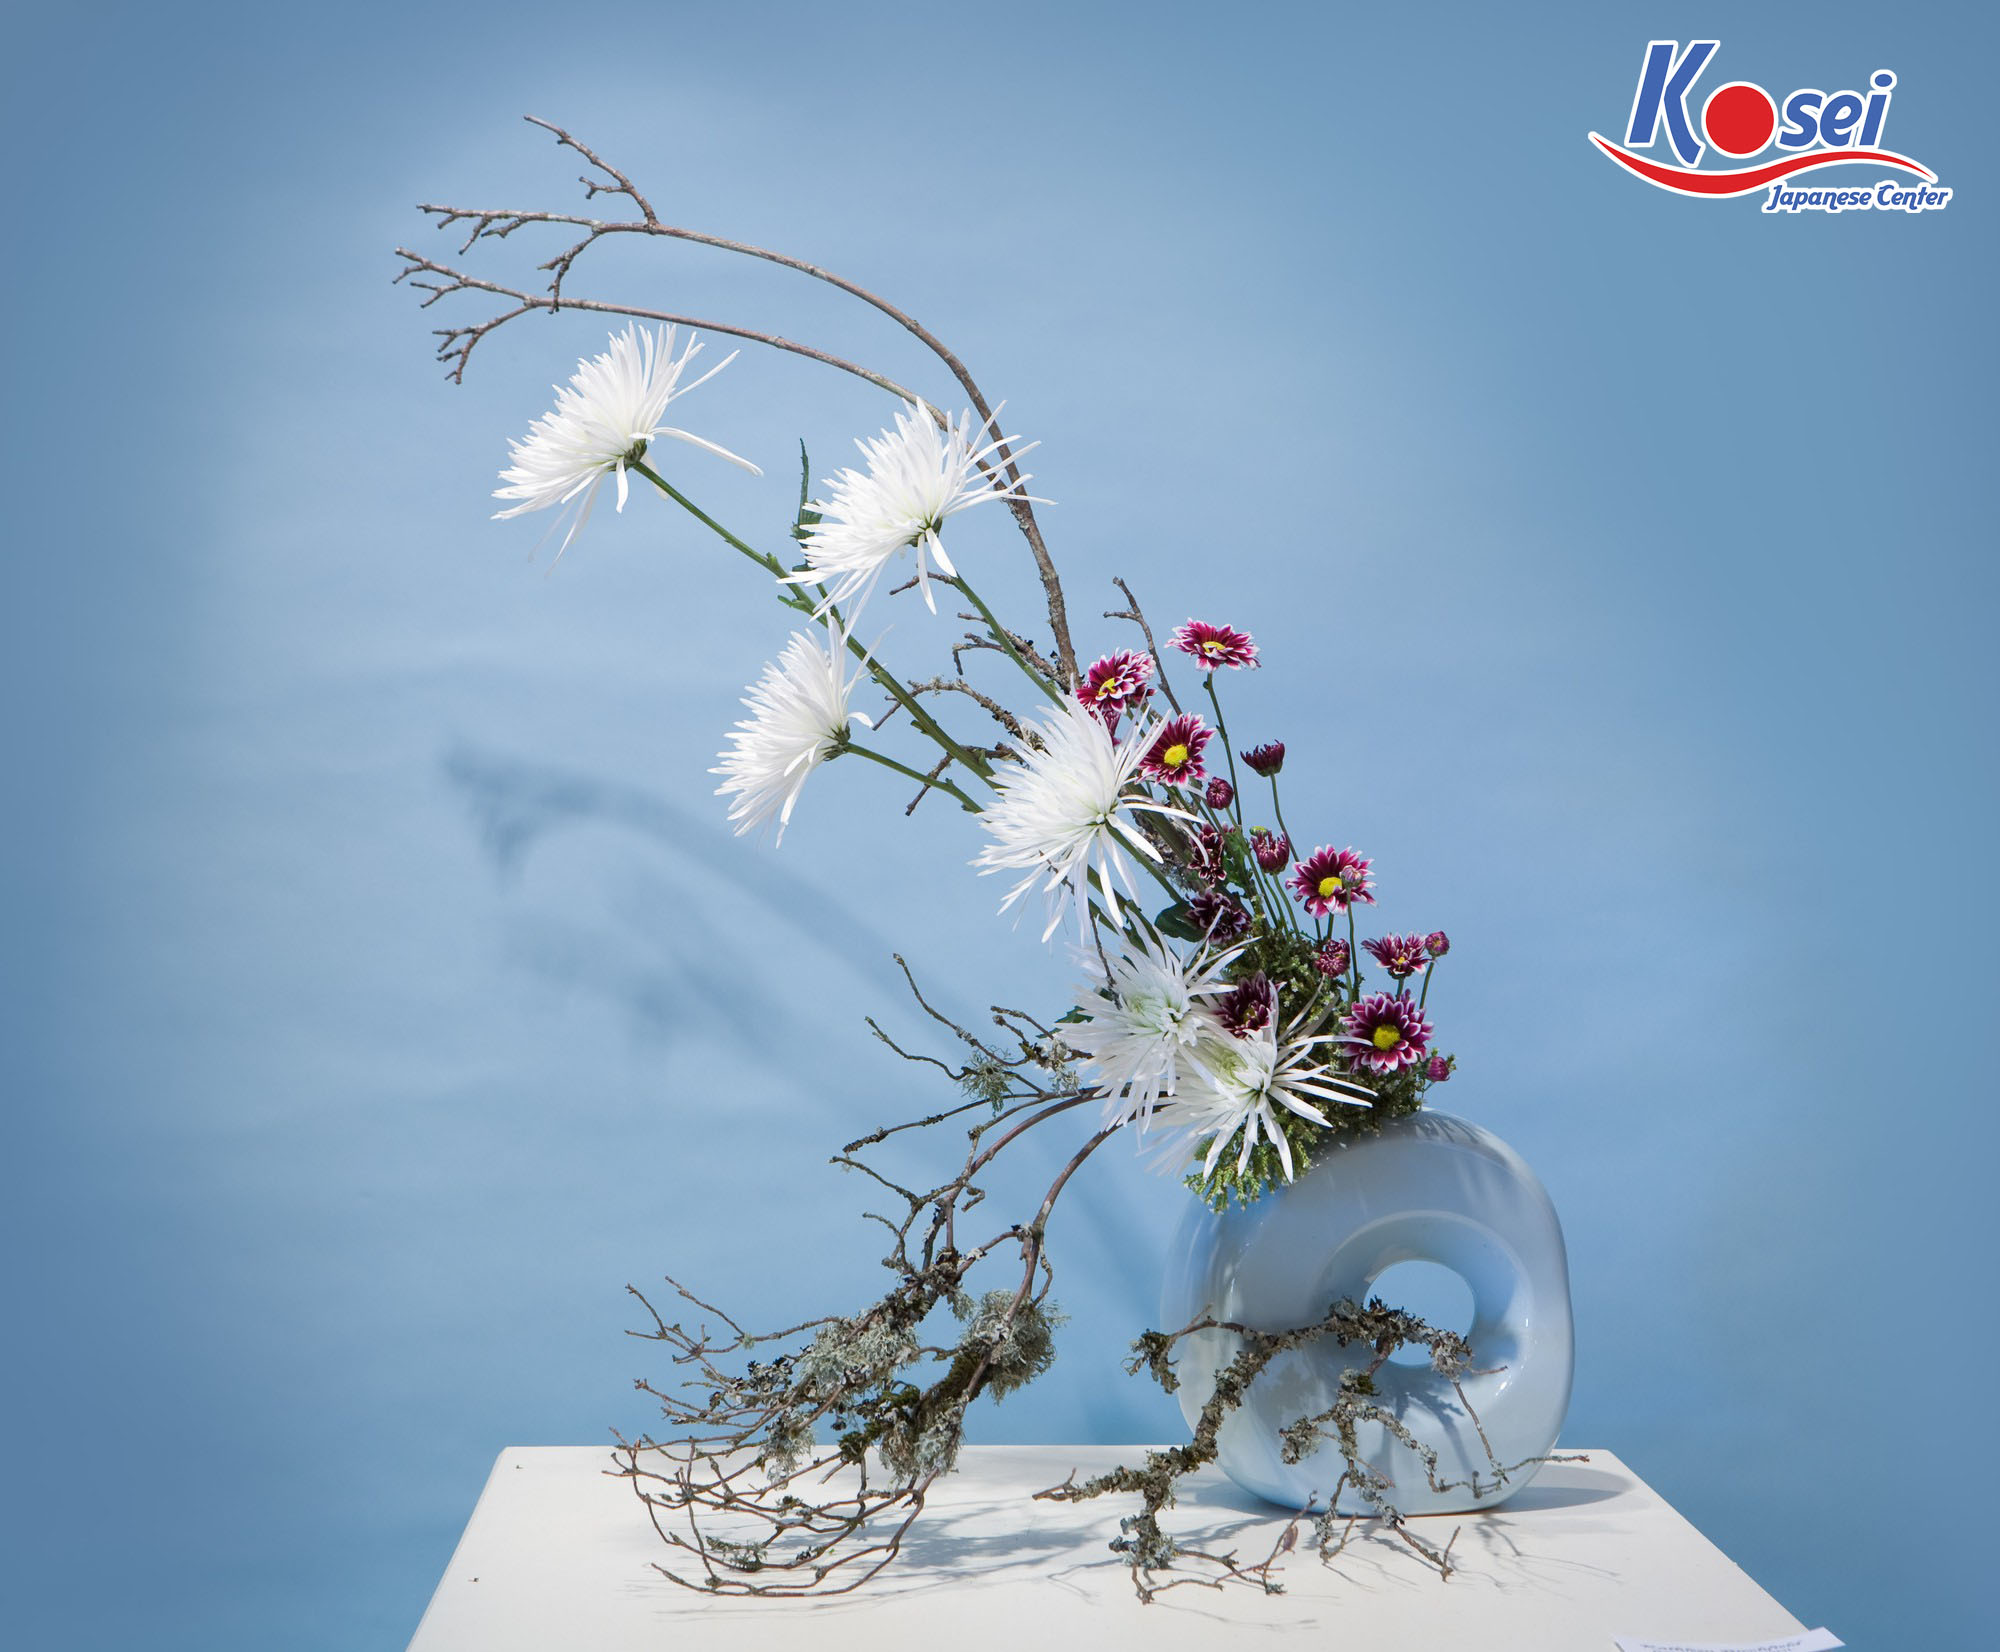 Giải mã chiều sâu triết lý, tư tưởng của người Nhật qua nghệ thuật cắm hoa Ikebana